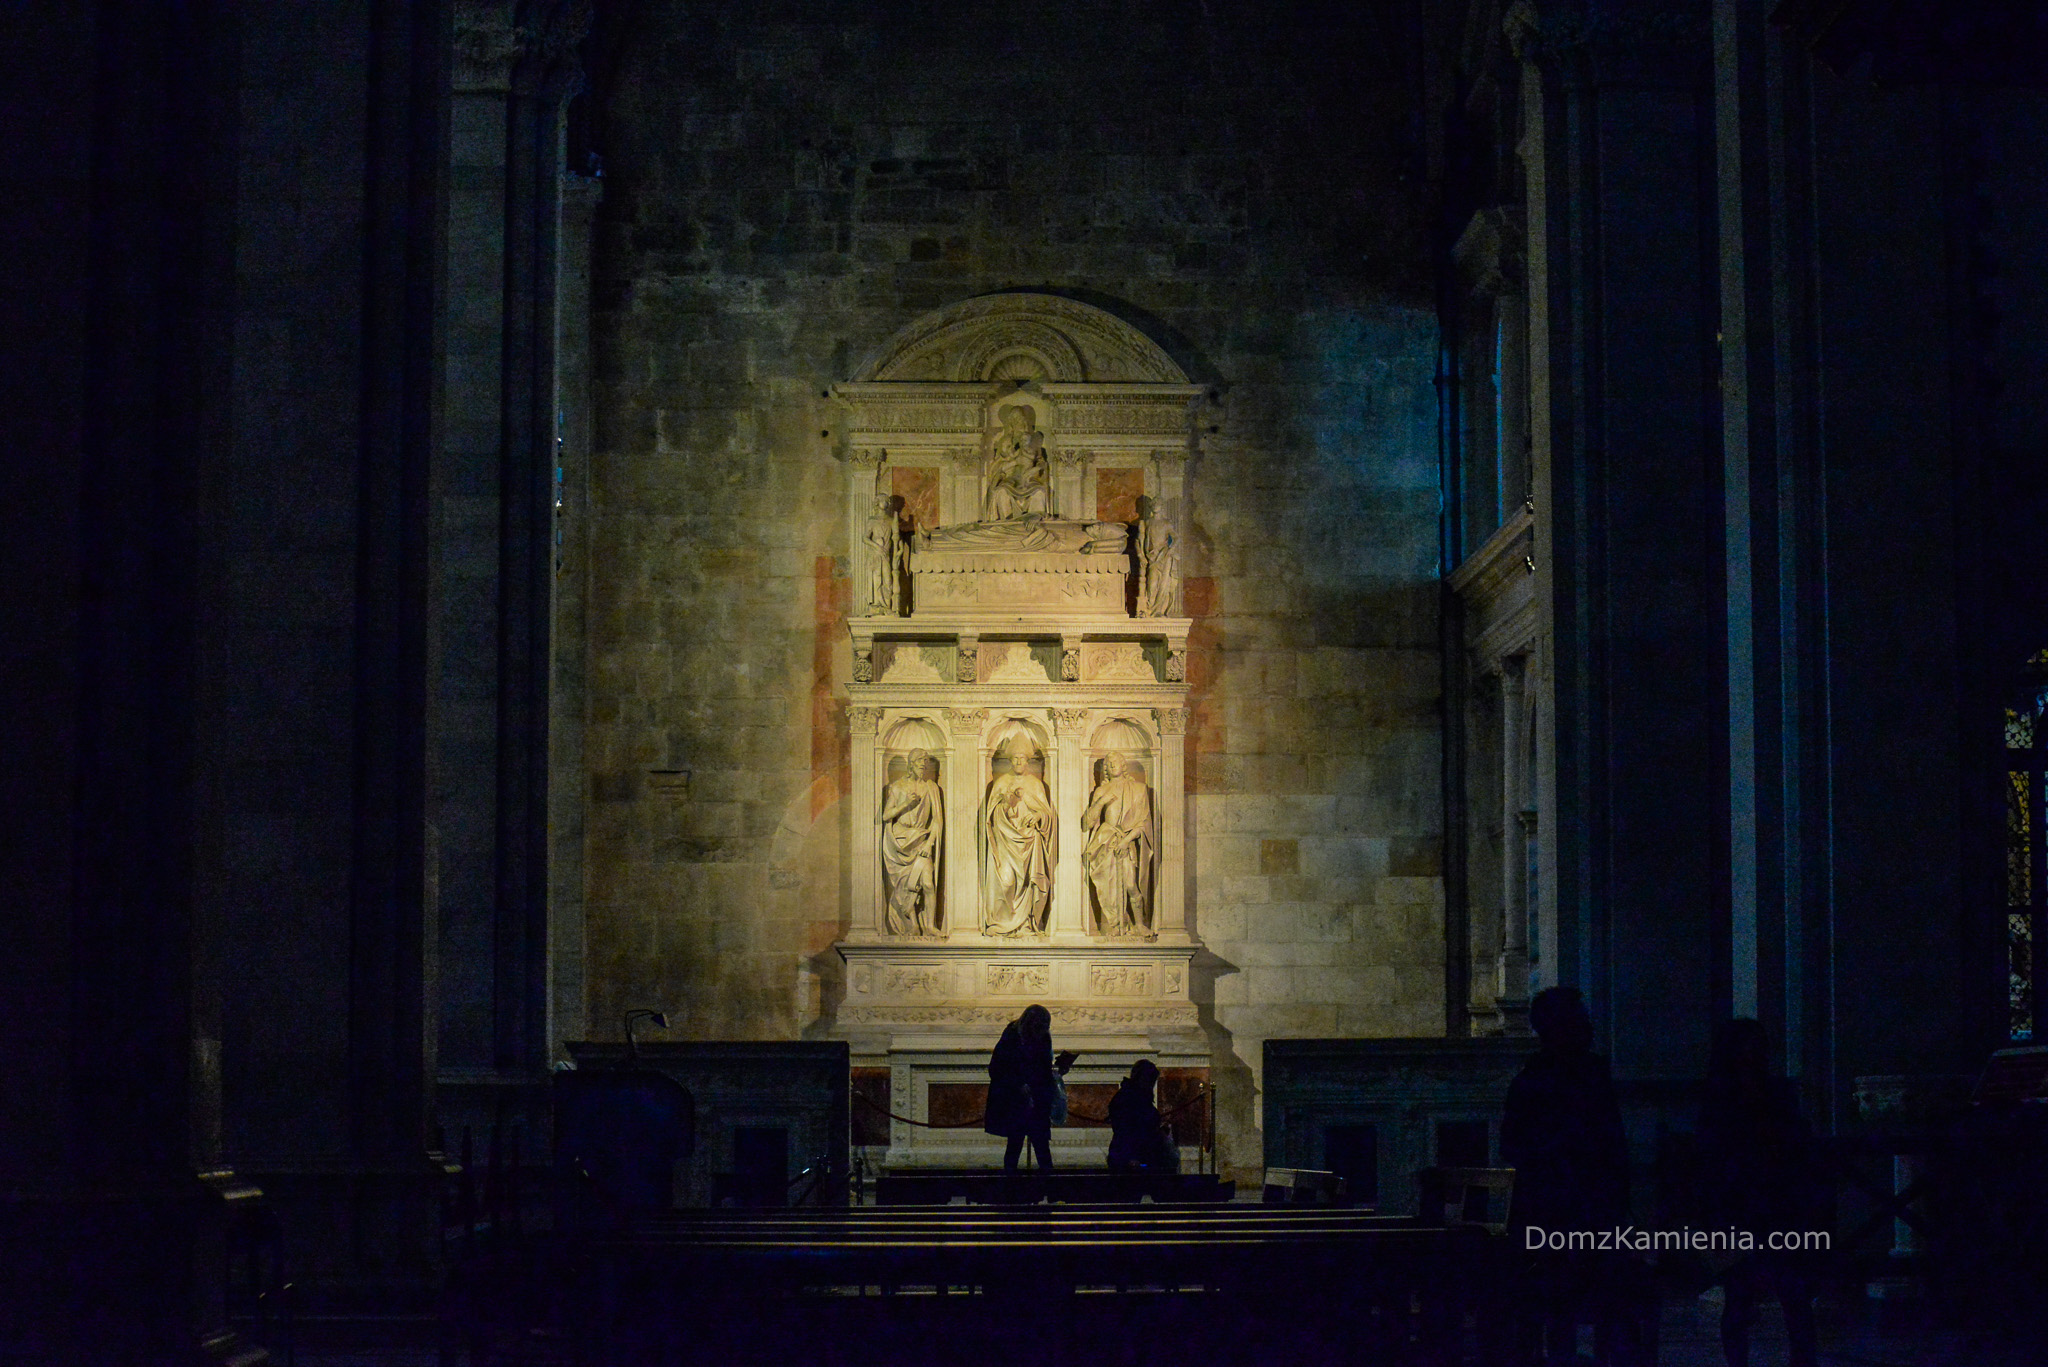 Katedra San Martino Lucca - co zobaczyć w jeden dzień.